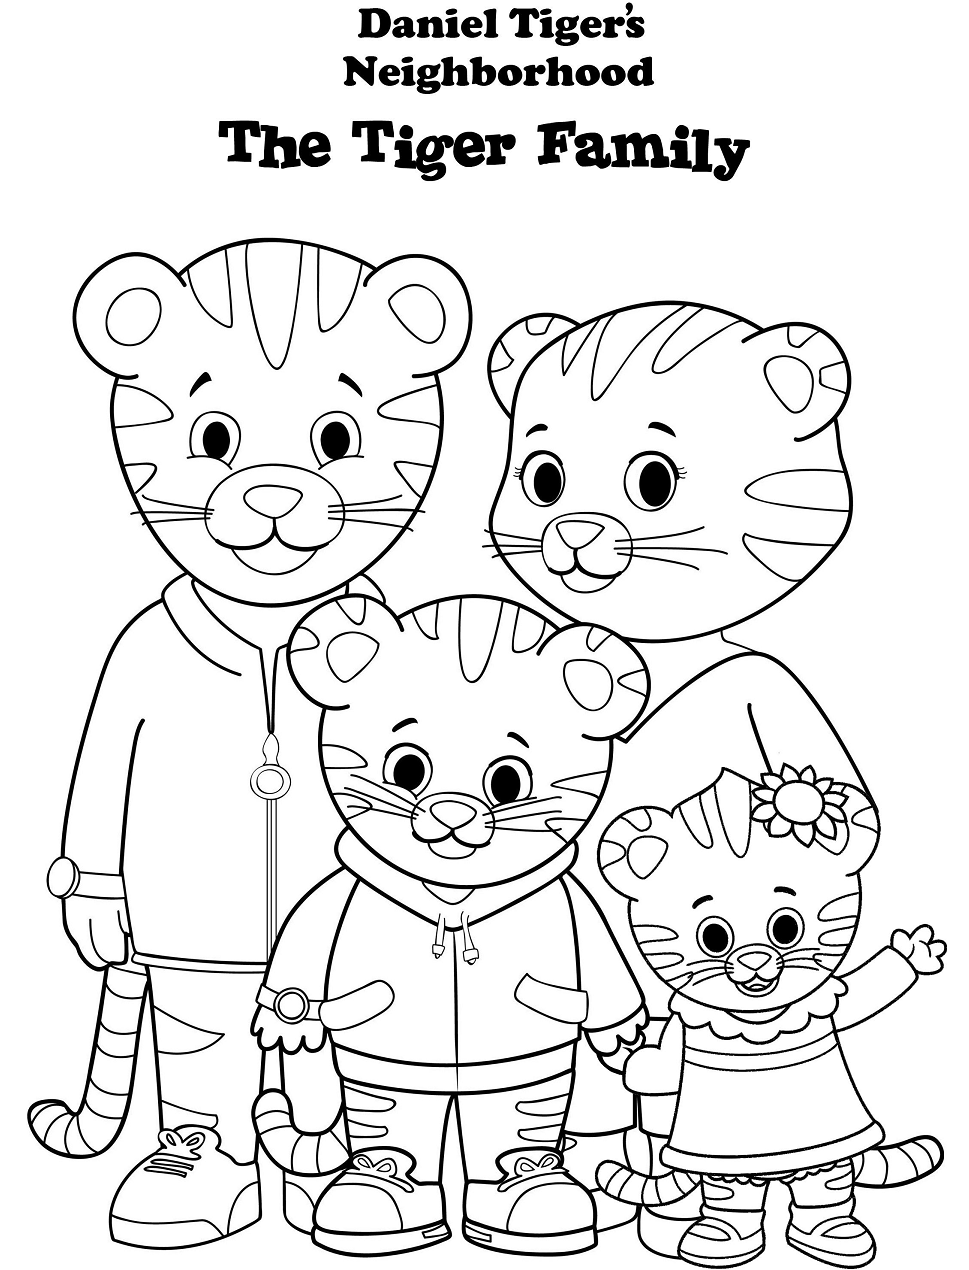 Dibujos de Familia Daniel Tiger para colorear